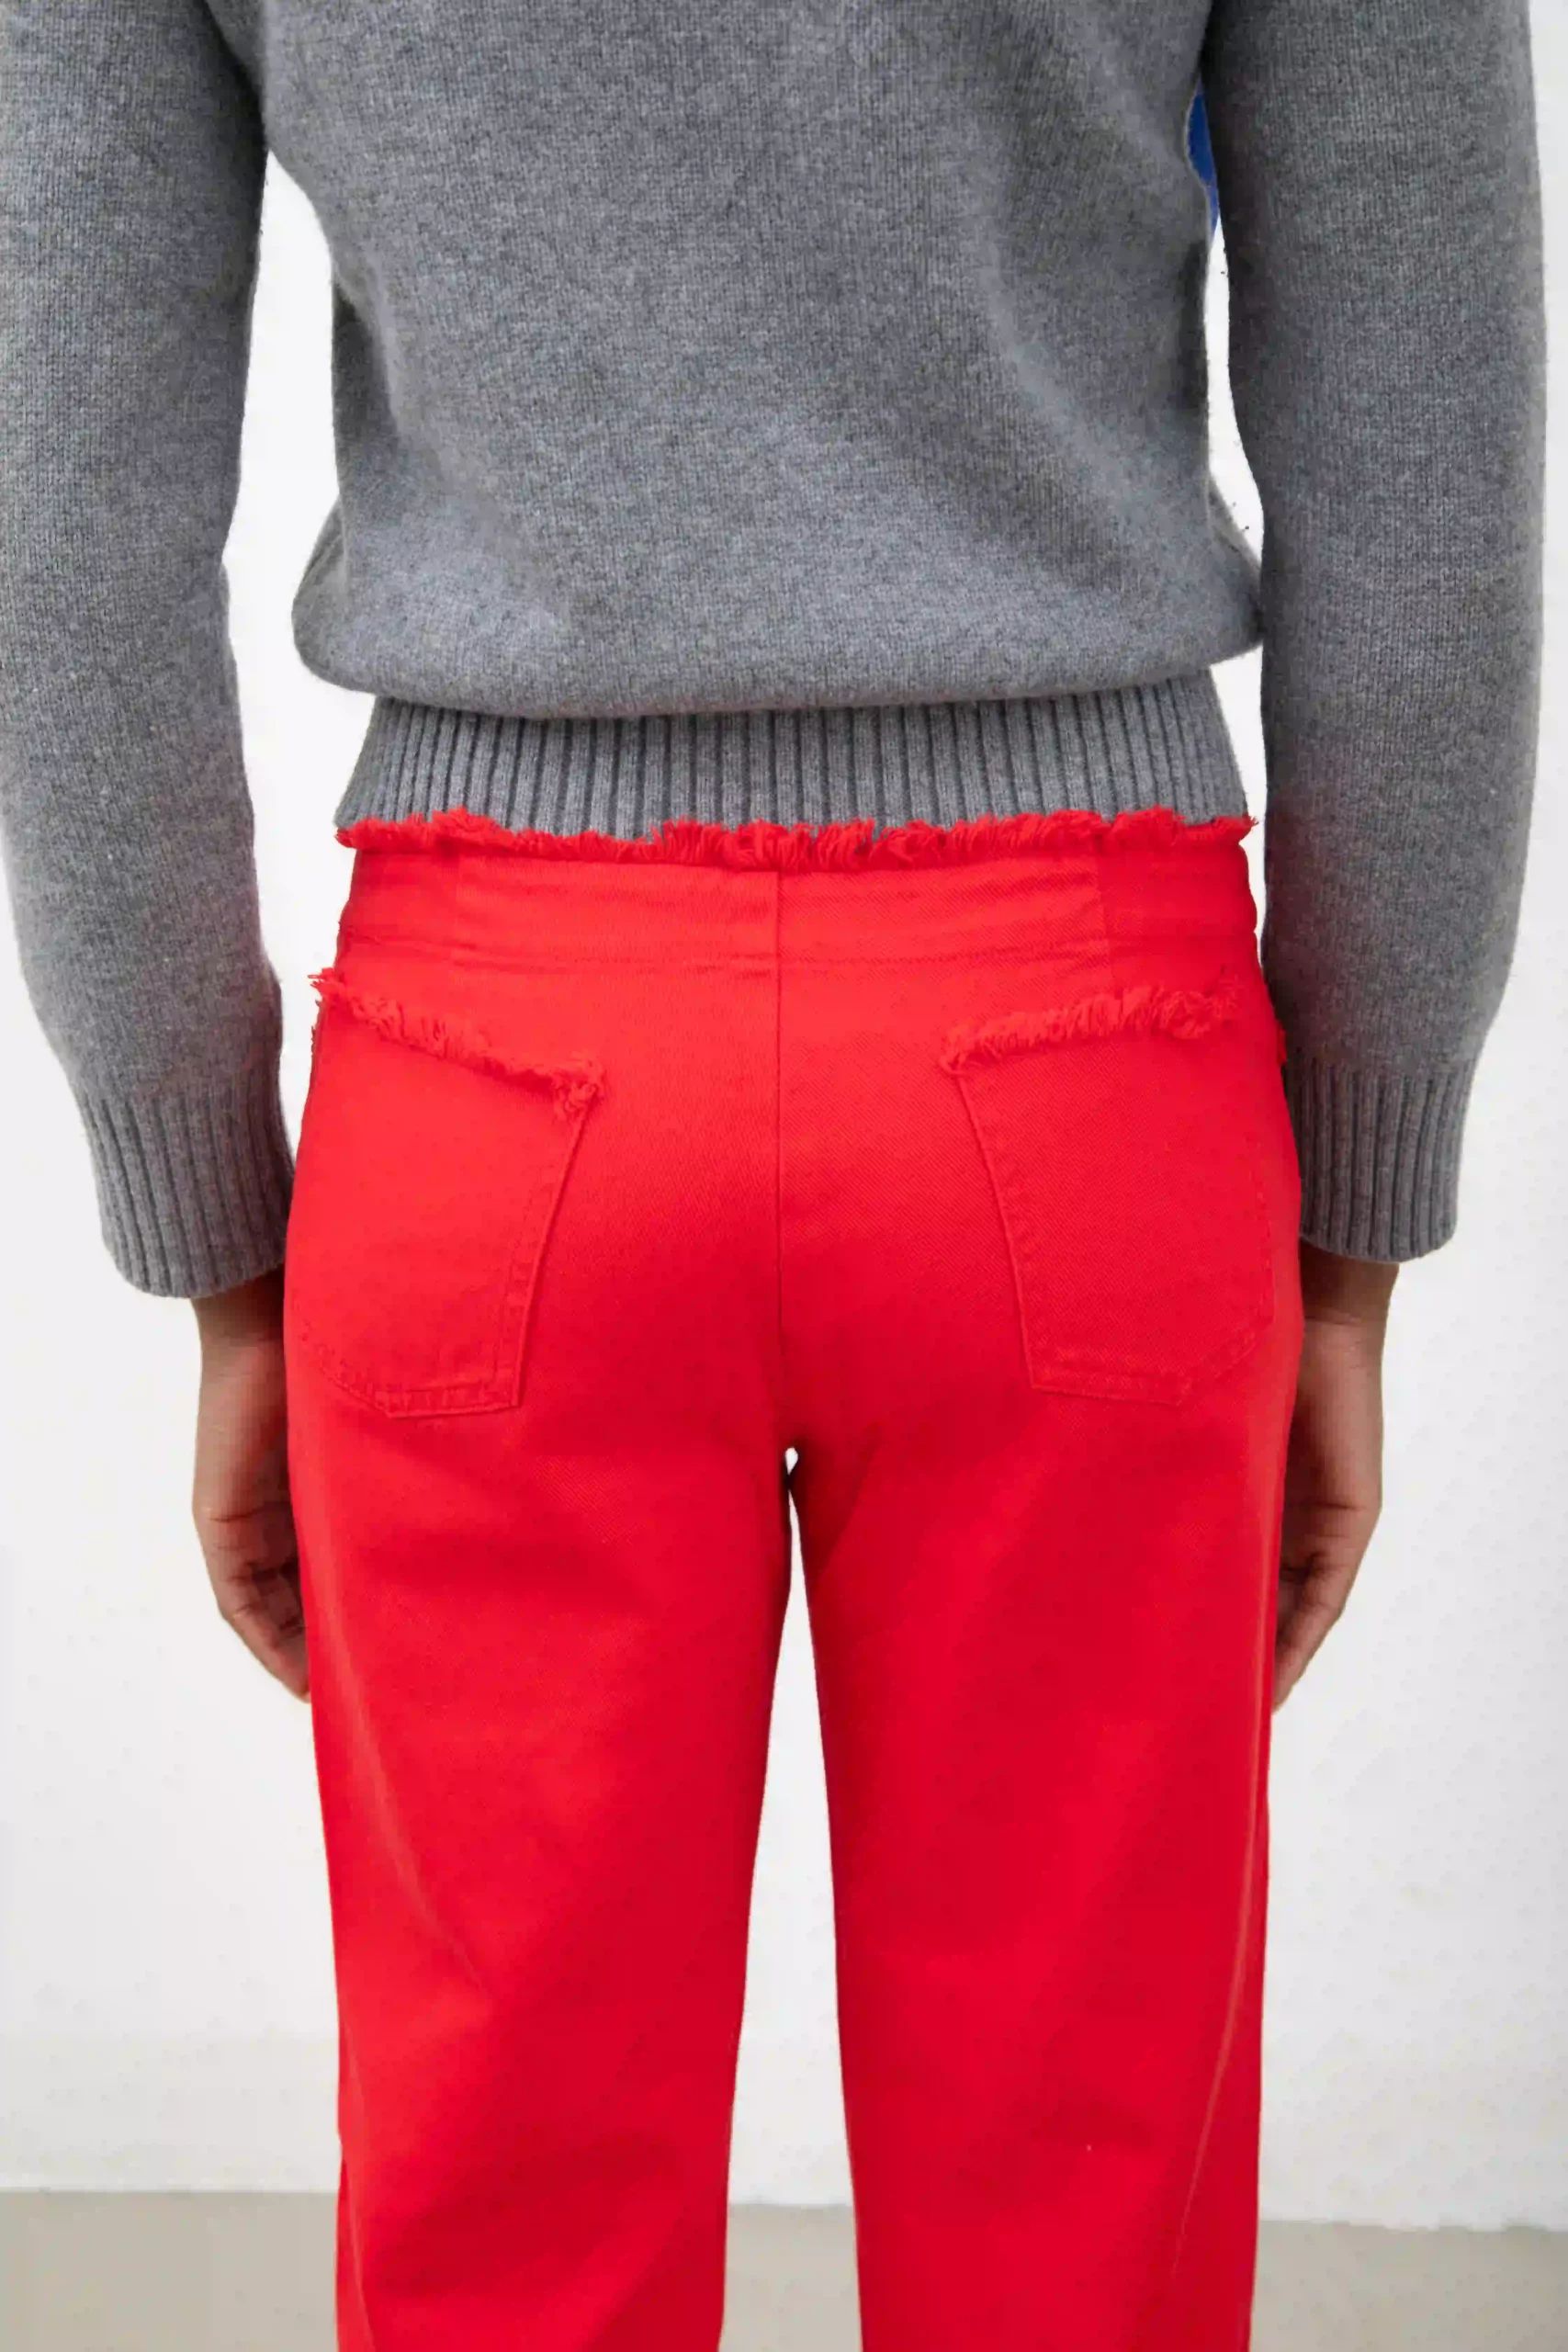 Pantalone Stefanel in drill di 100% cotone, rosso, con bordi e vita sfrangiati. Ricamo in stile anni ’70 sulla gamba destra (indossata), motivo a fiori e paisley.